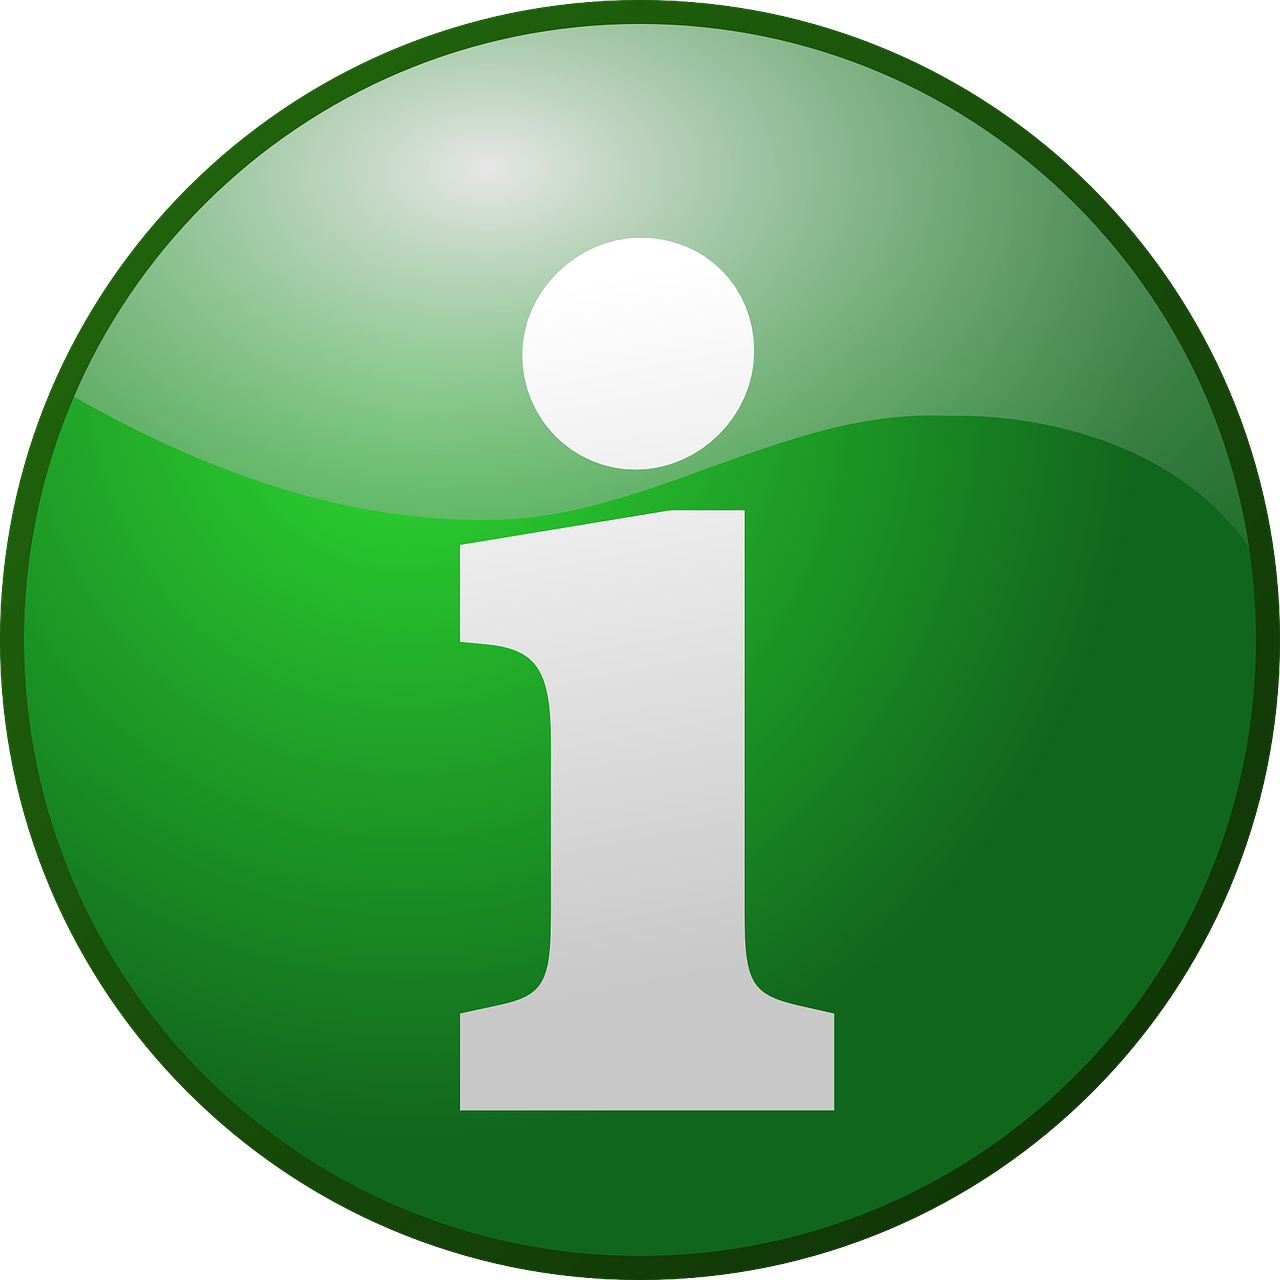 Znak informacyjny - na zielonym kole literka I